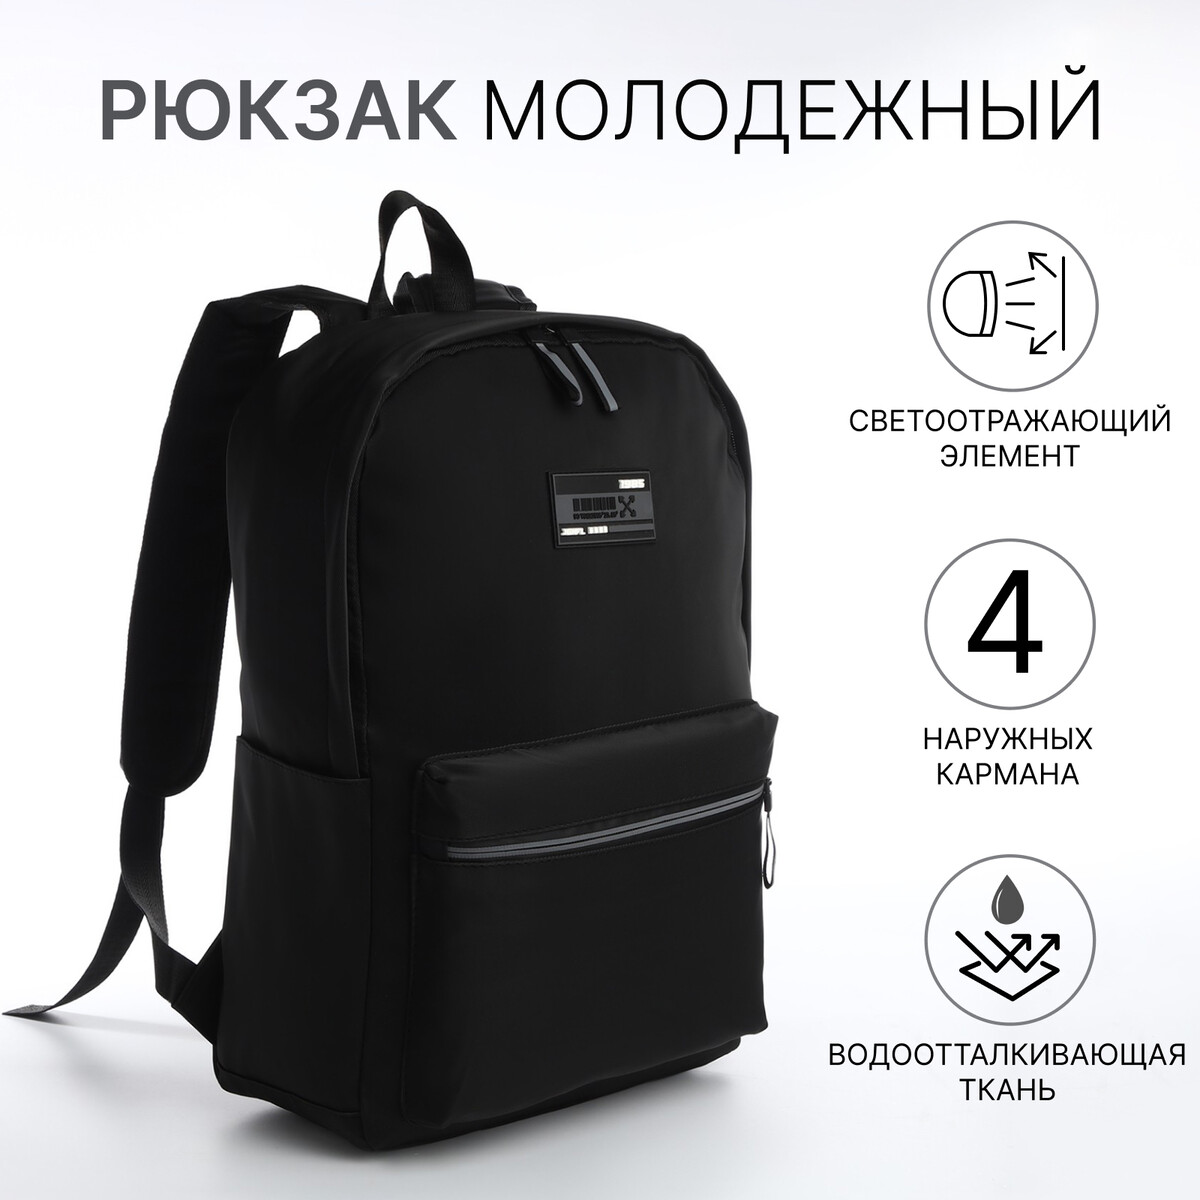 Рюкзак молодежный из текстиля на молнии, водонепроницаемый, 4 кармана, цвет черный/серый